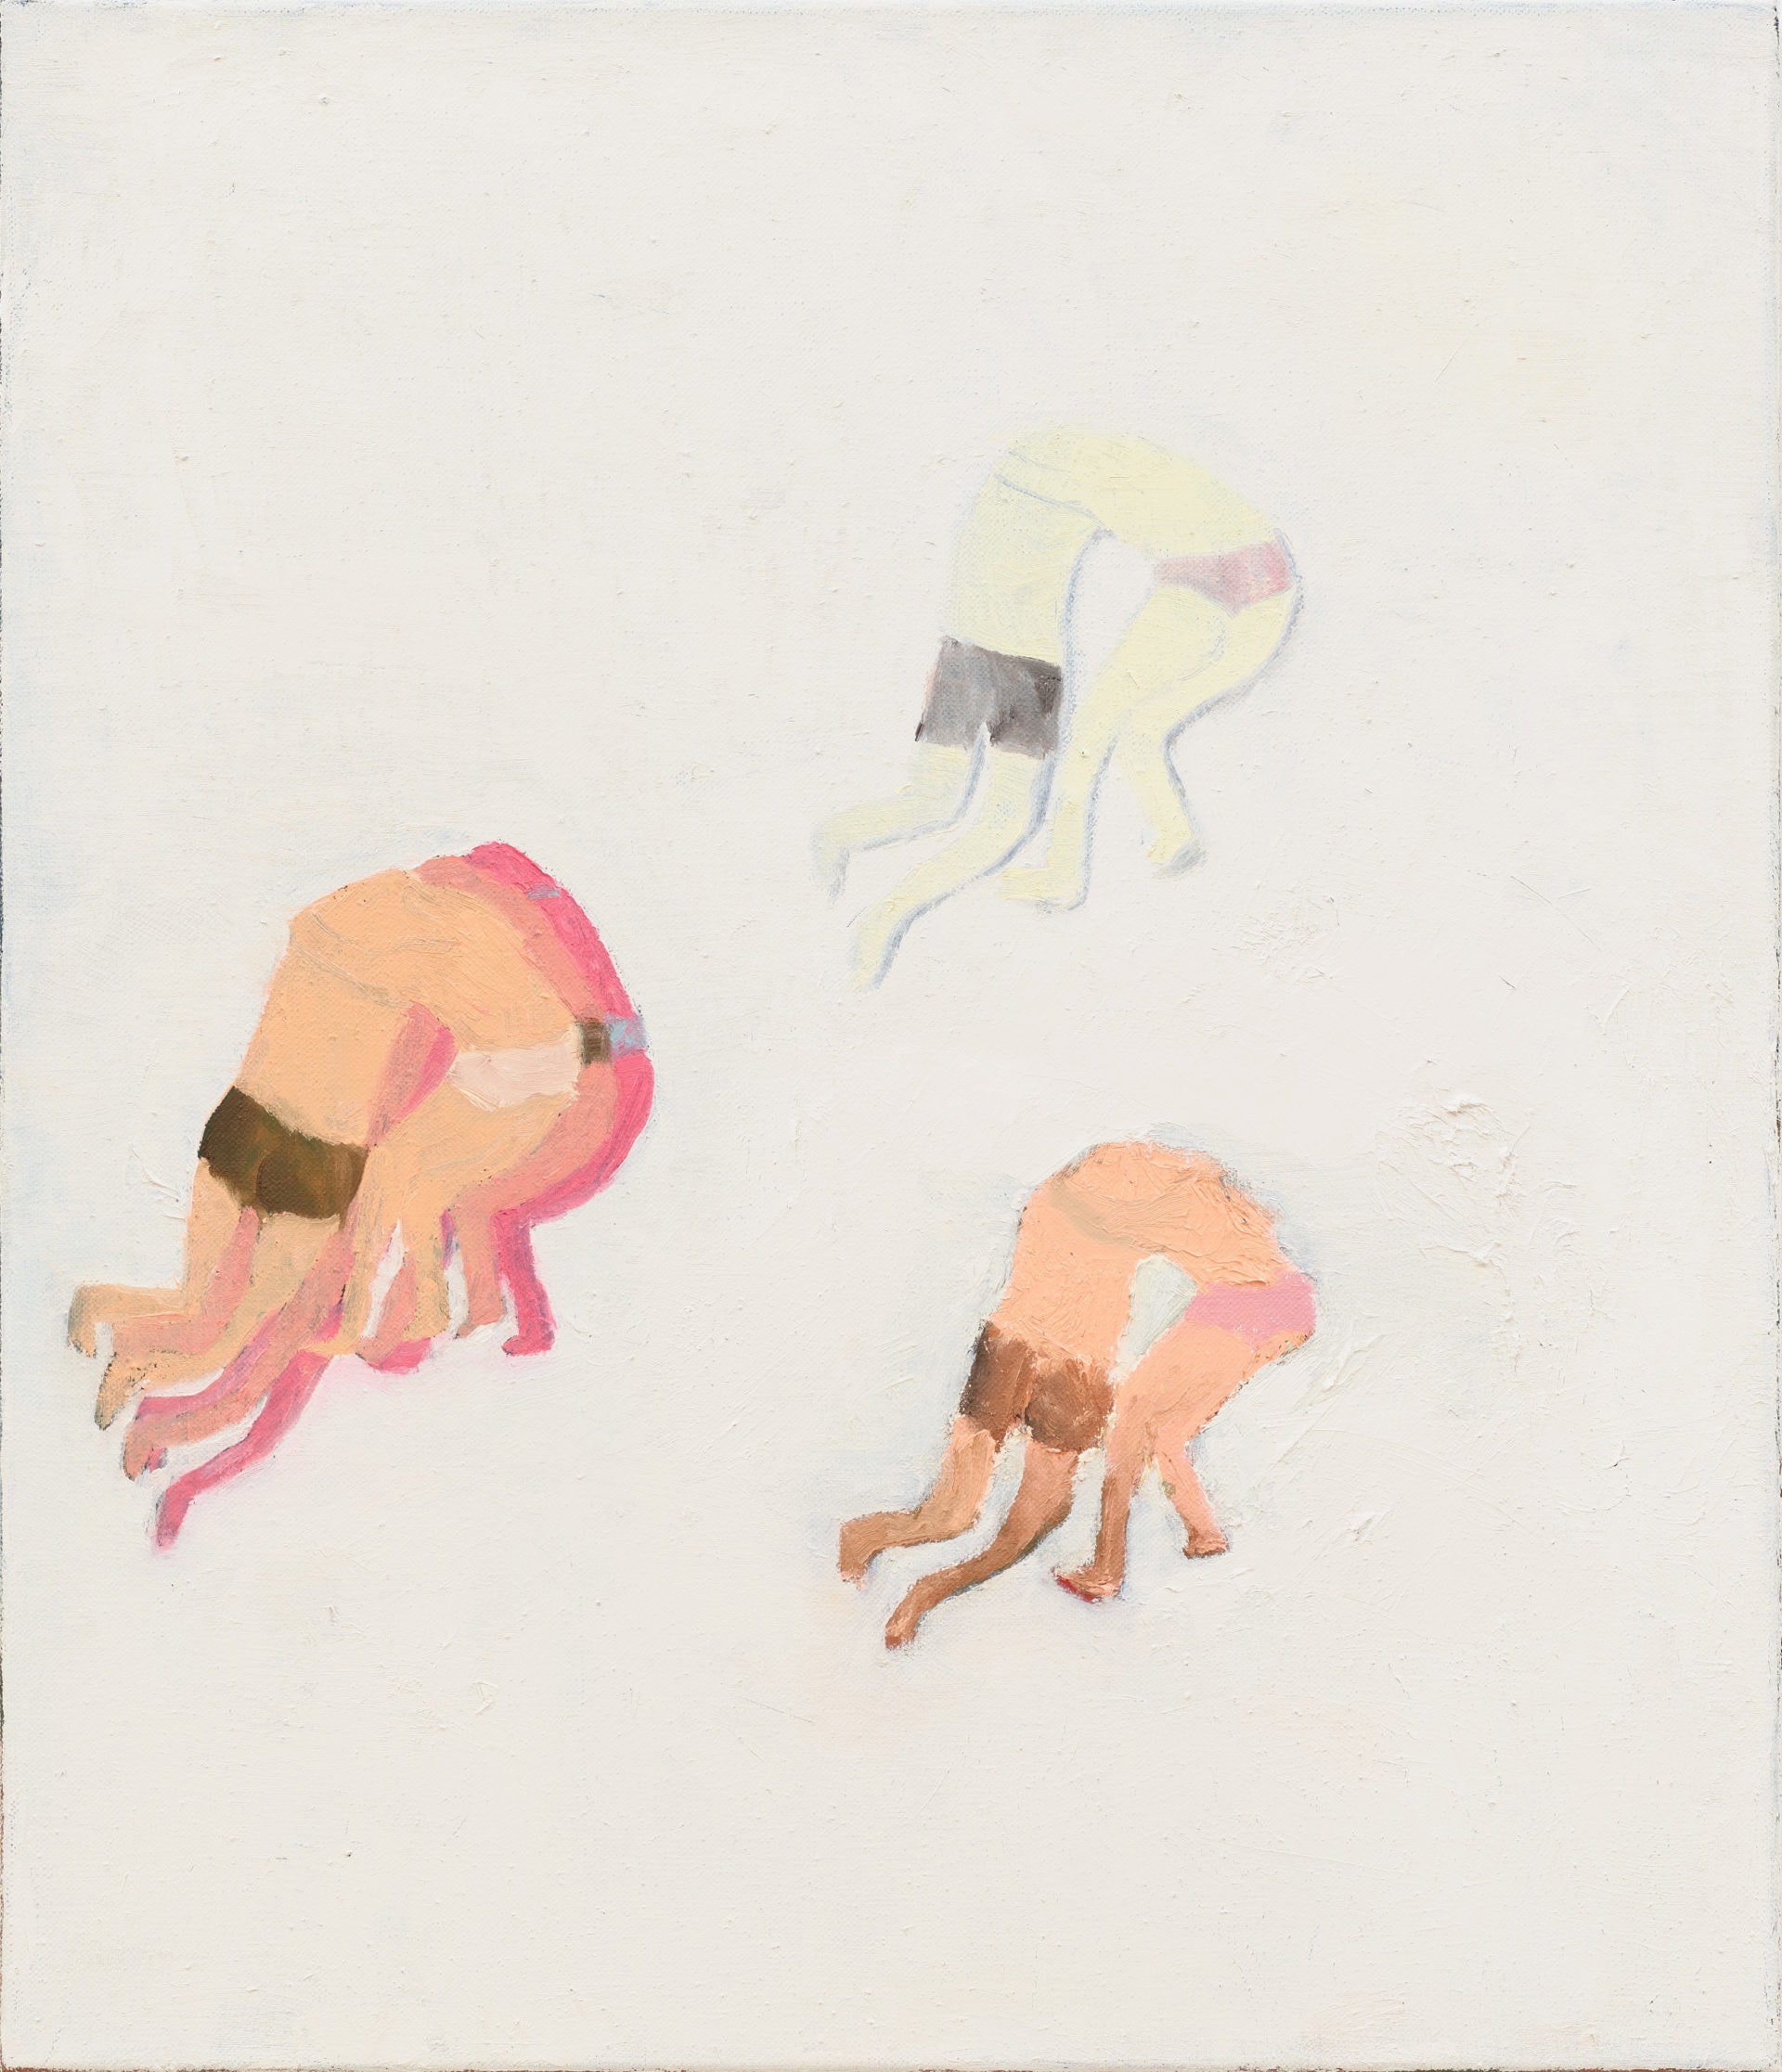 Marlon Wobst, FünfPaare (Cinq couples –Five couples), K51089, 70 x 60 cm, huile sur toile, 2019. Courtesy Marlon Wobst & Galerie Maria Lund, Paris.